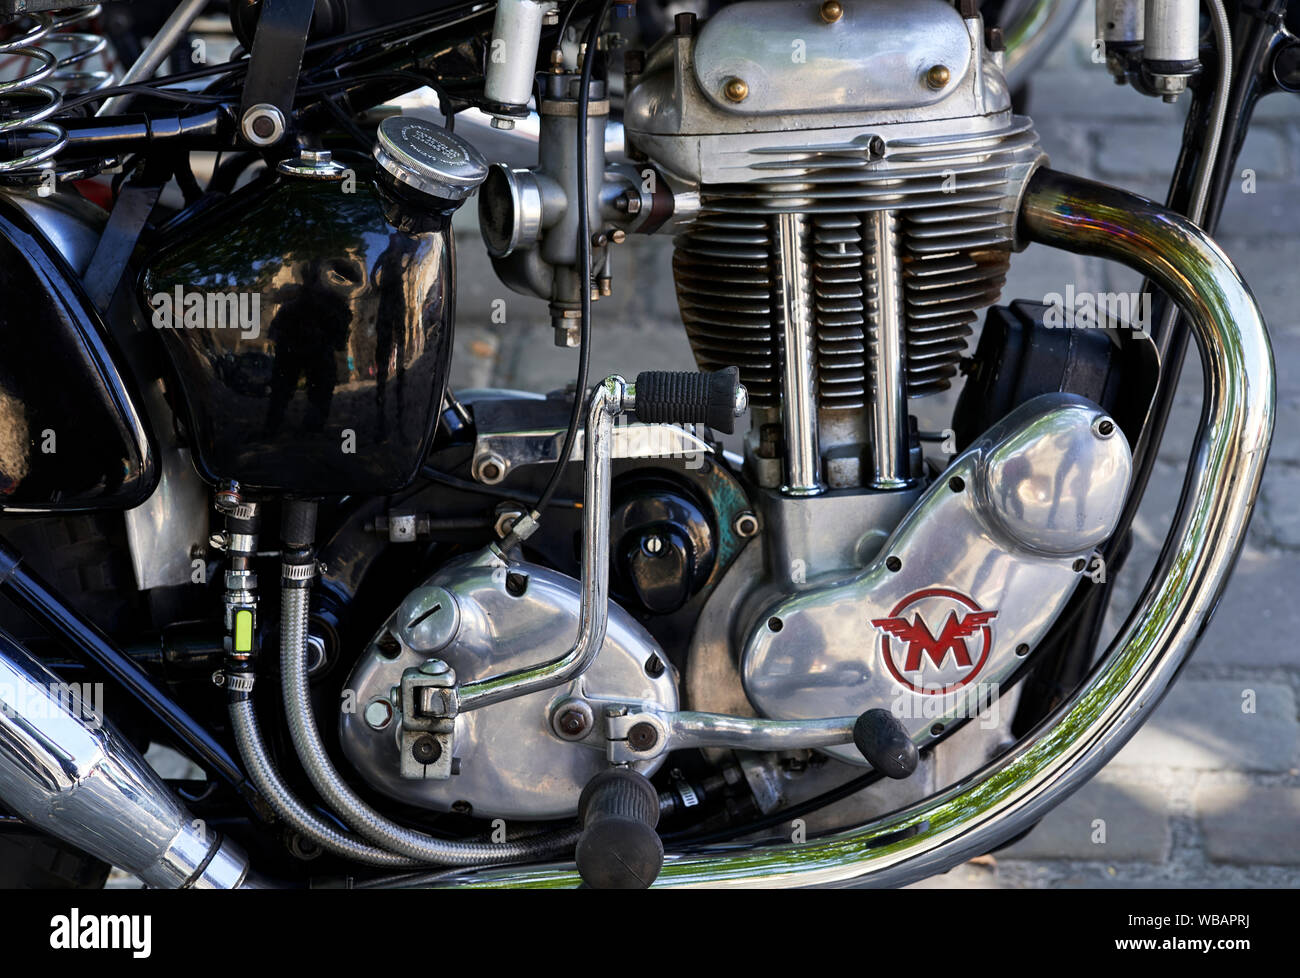 Unvergleichliche Motorrad 1954 Detailansicht des Motors. Stockfoto